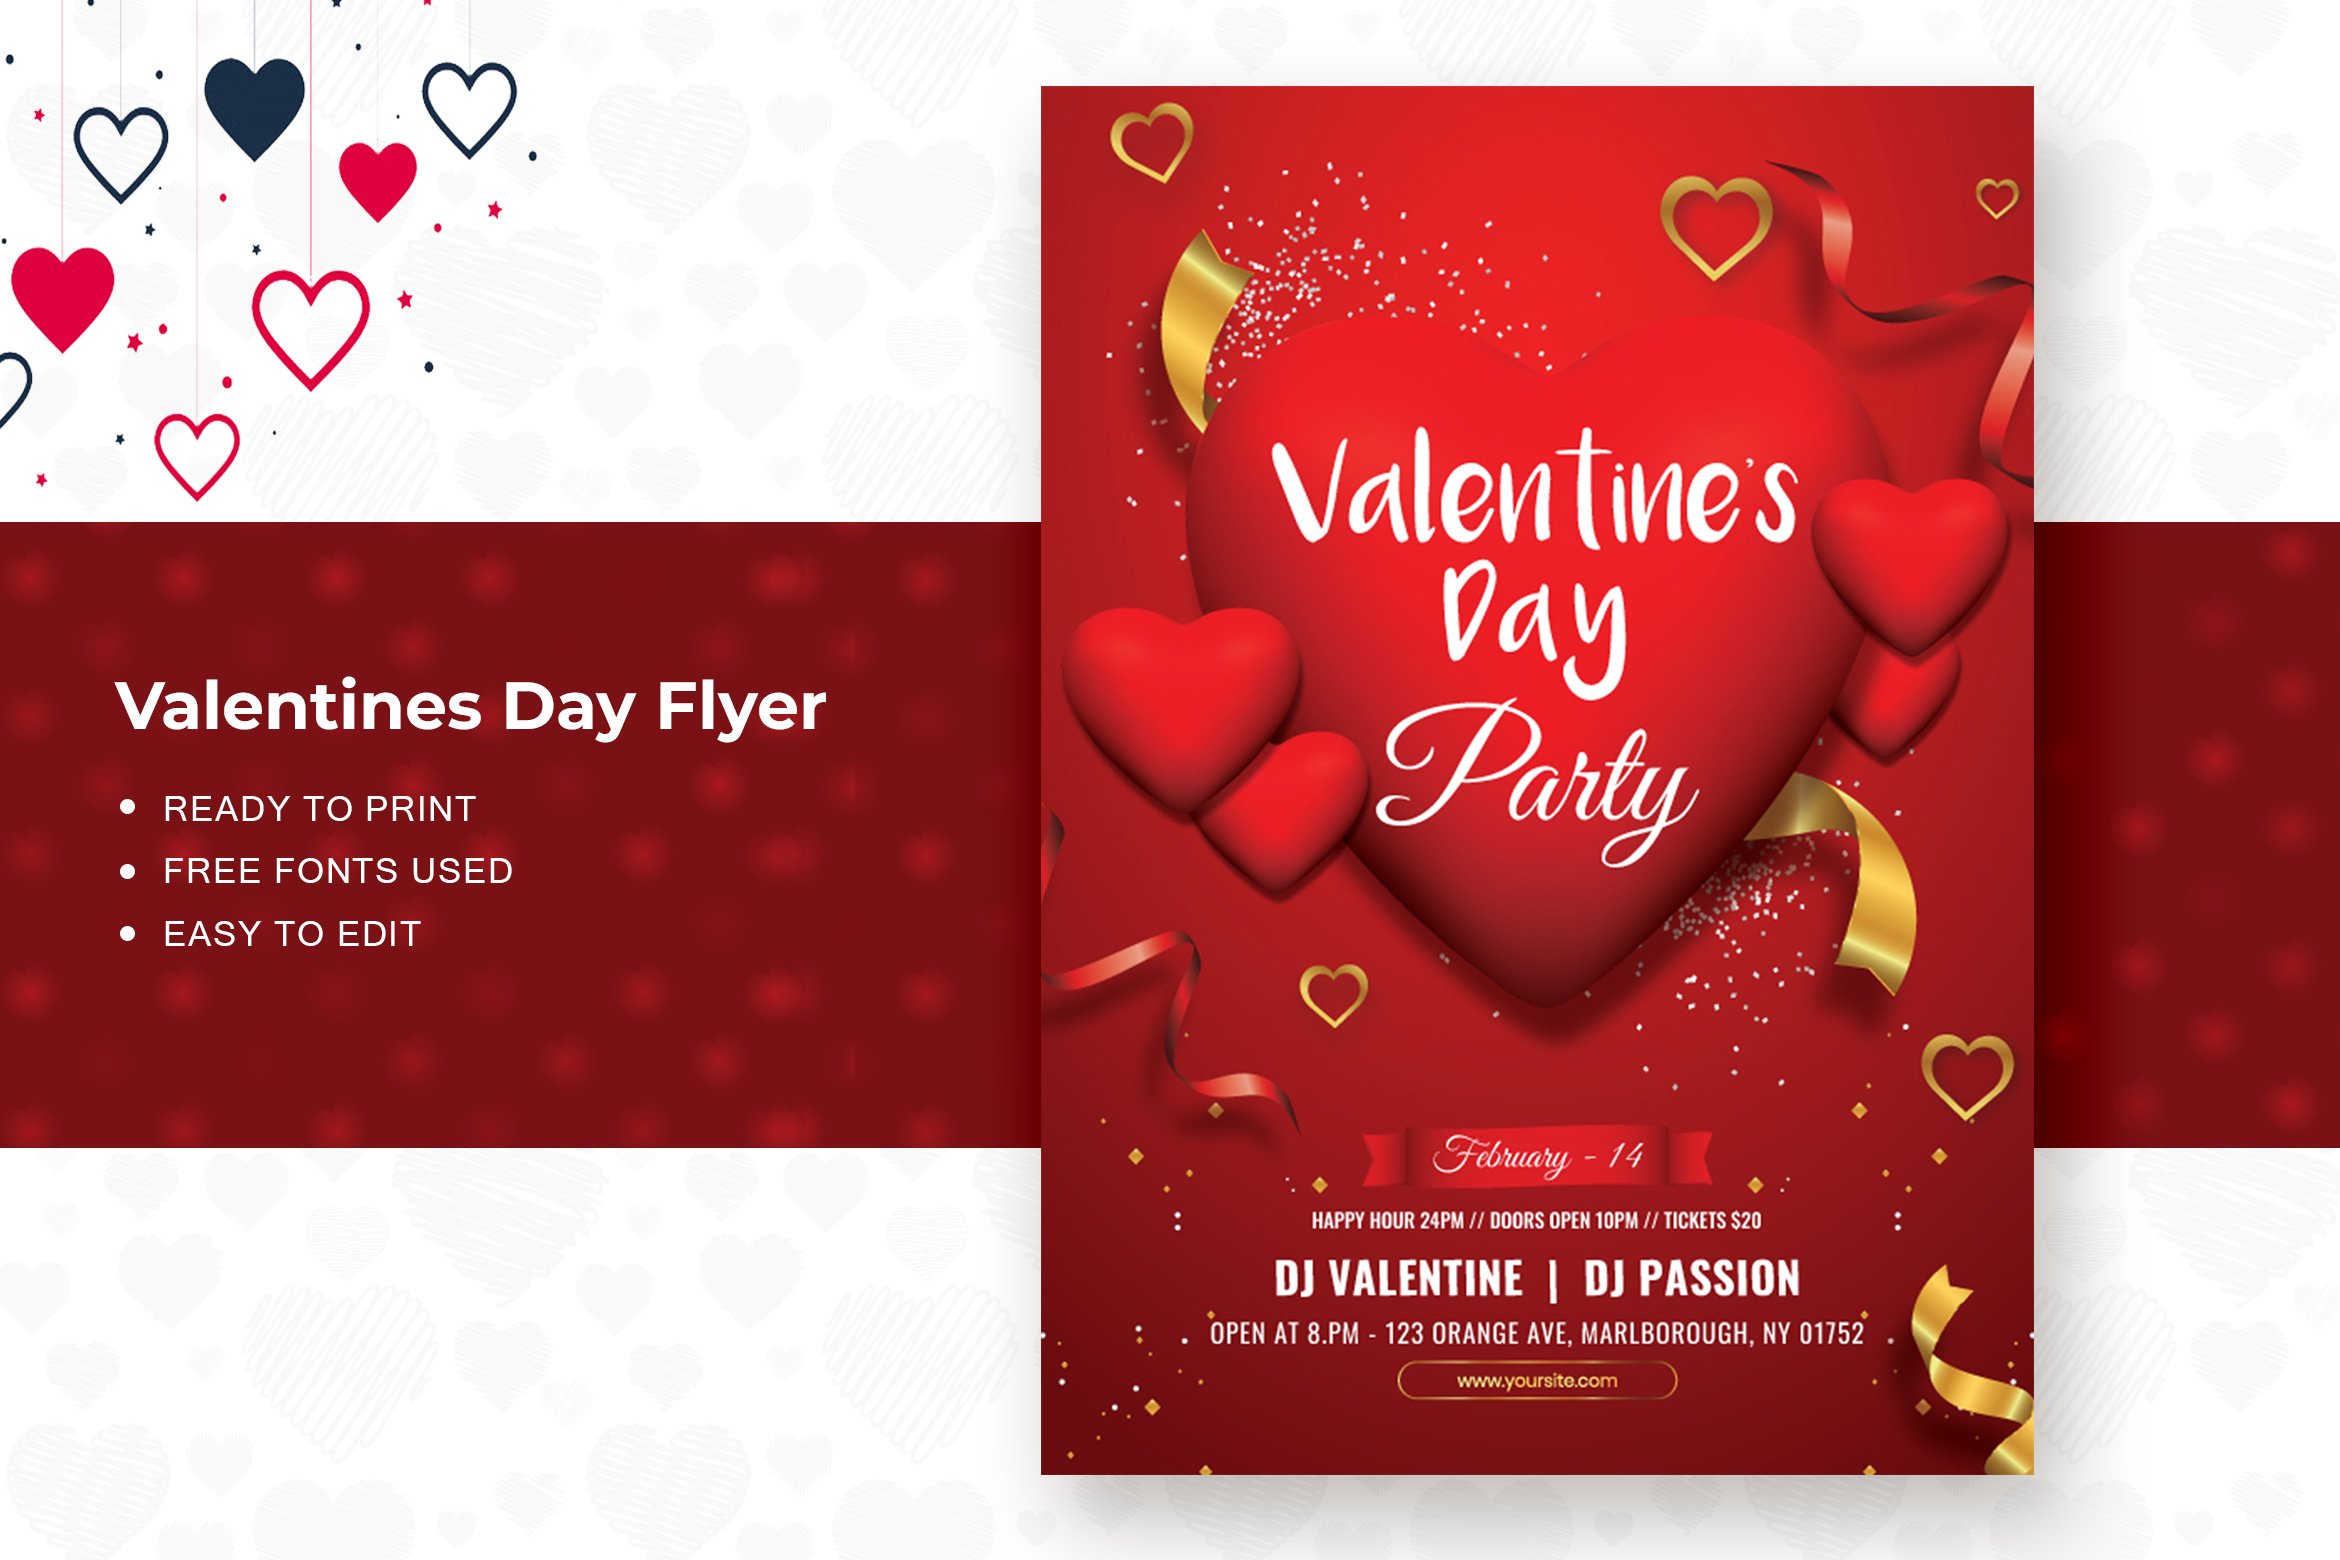 Valentine’s Day Flyer